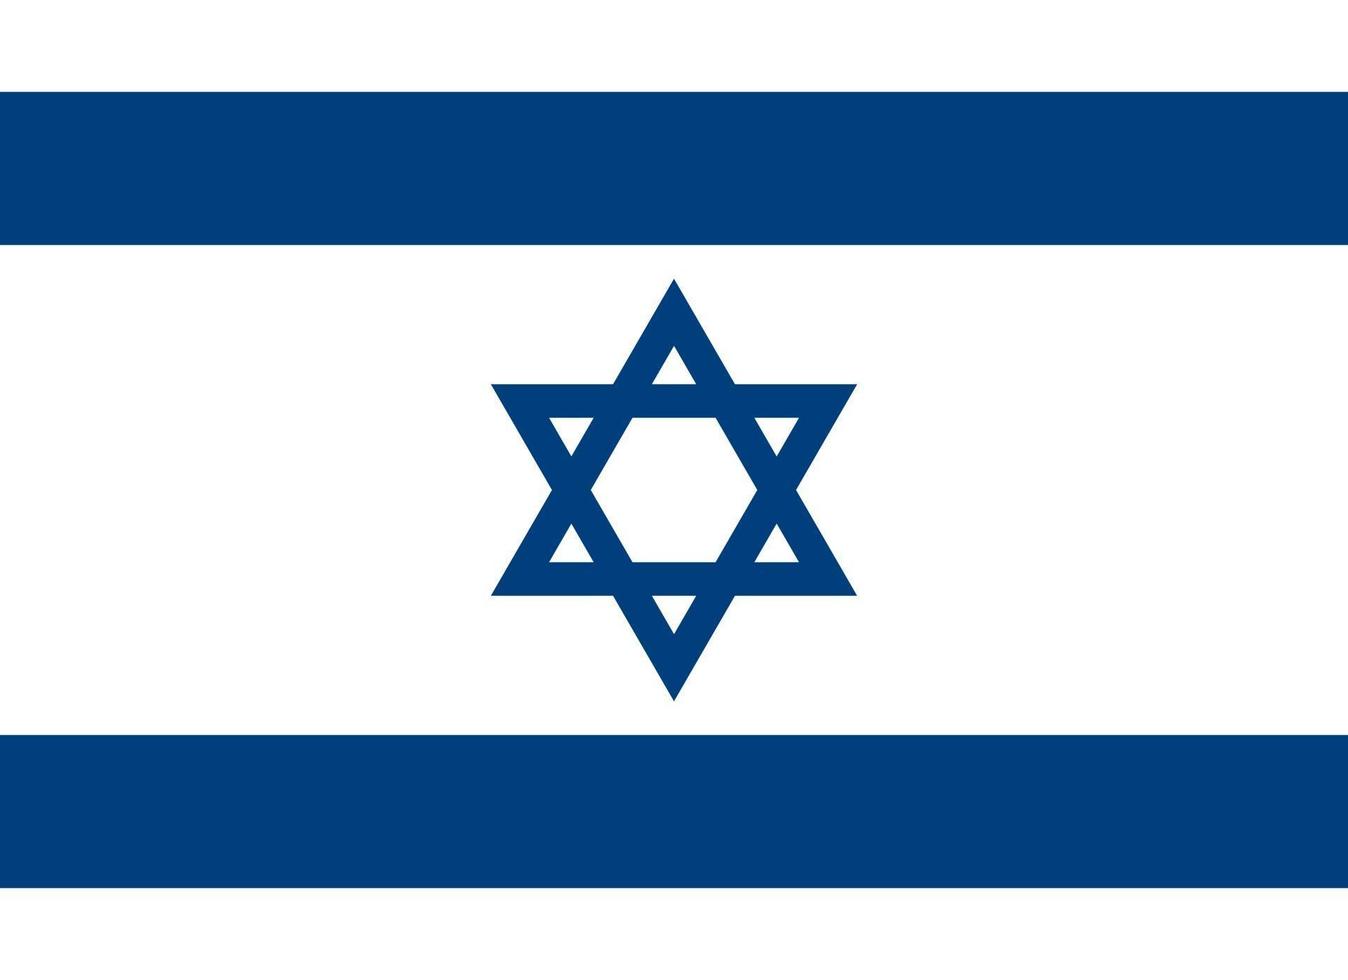 Israël drapeau officiellement vecteur